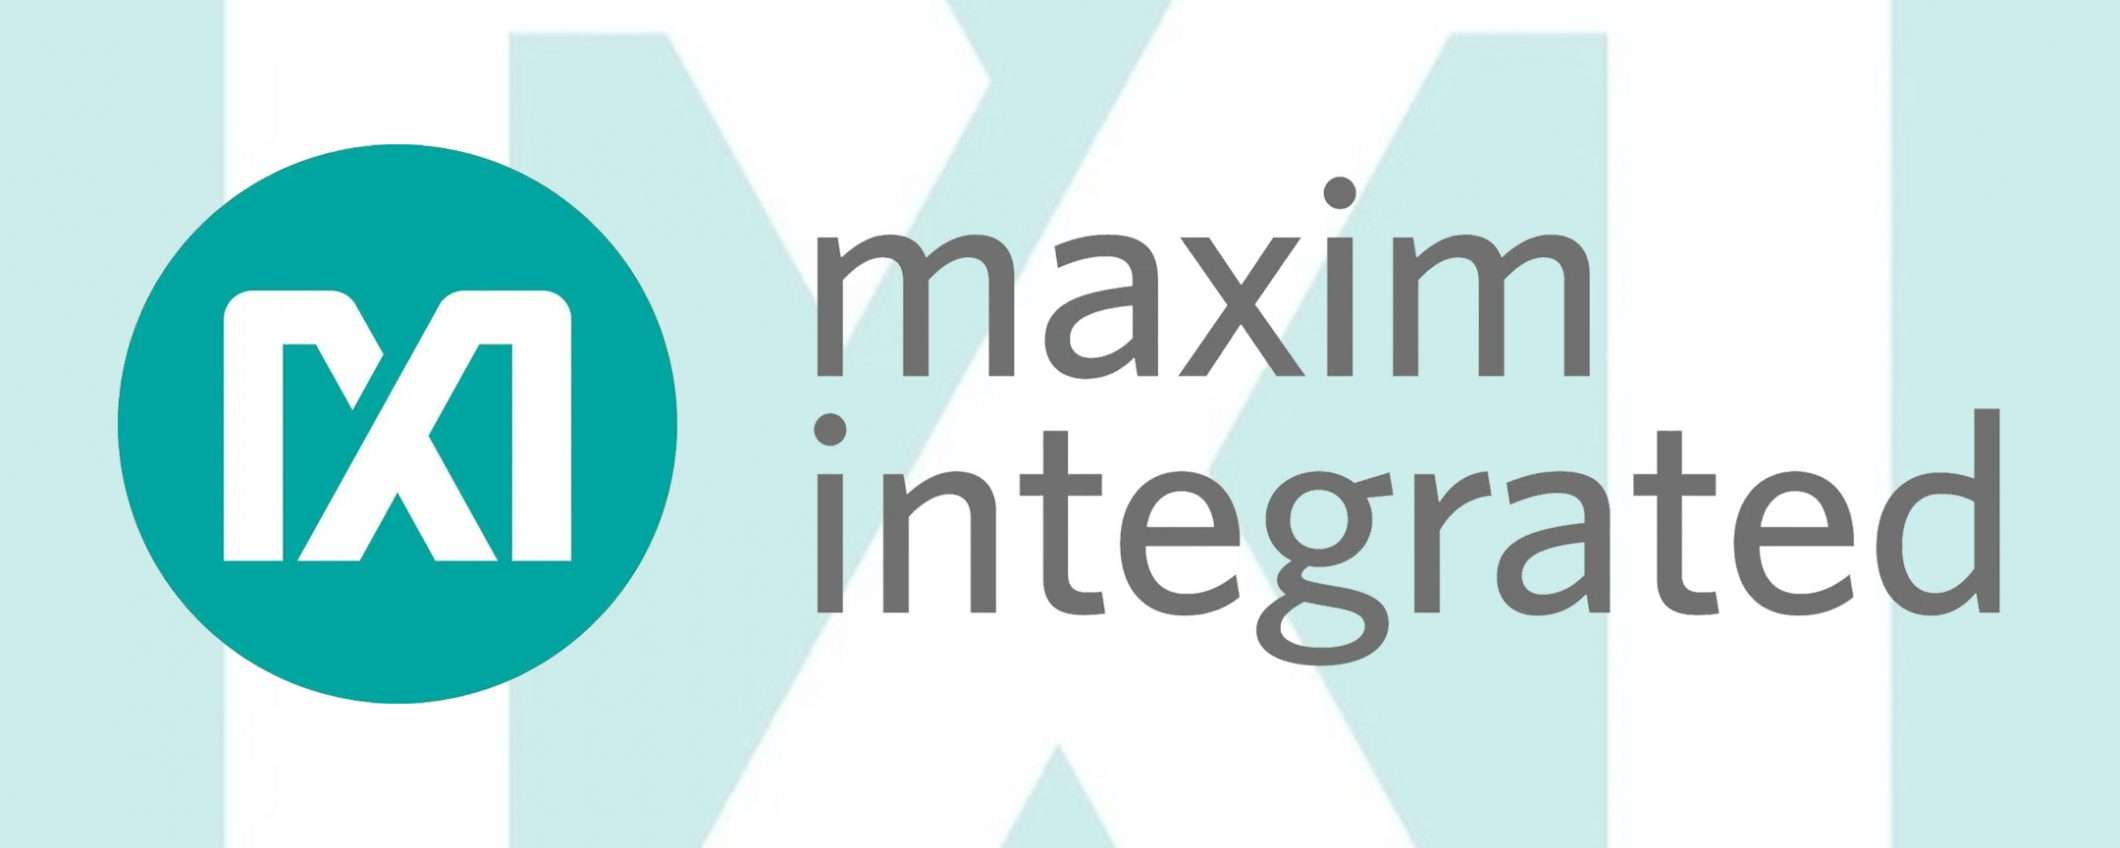 Maxim Integrated è l'acquisizione di Analog Devices